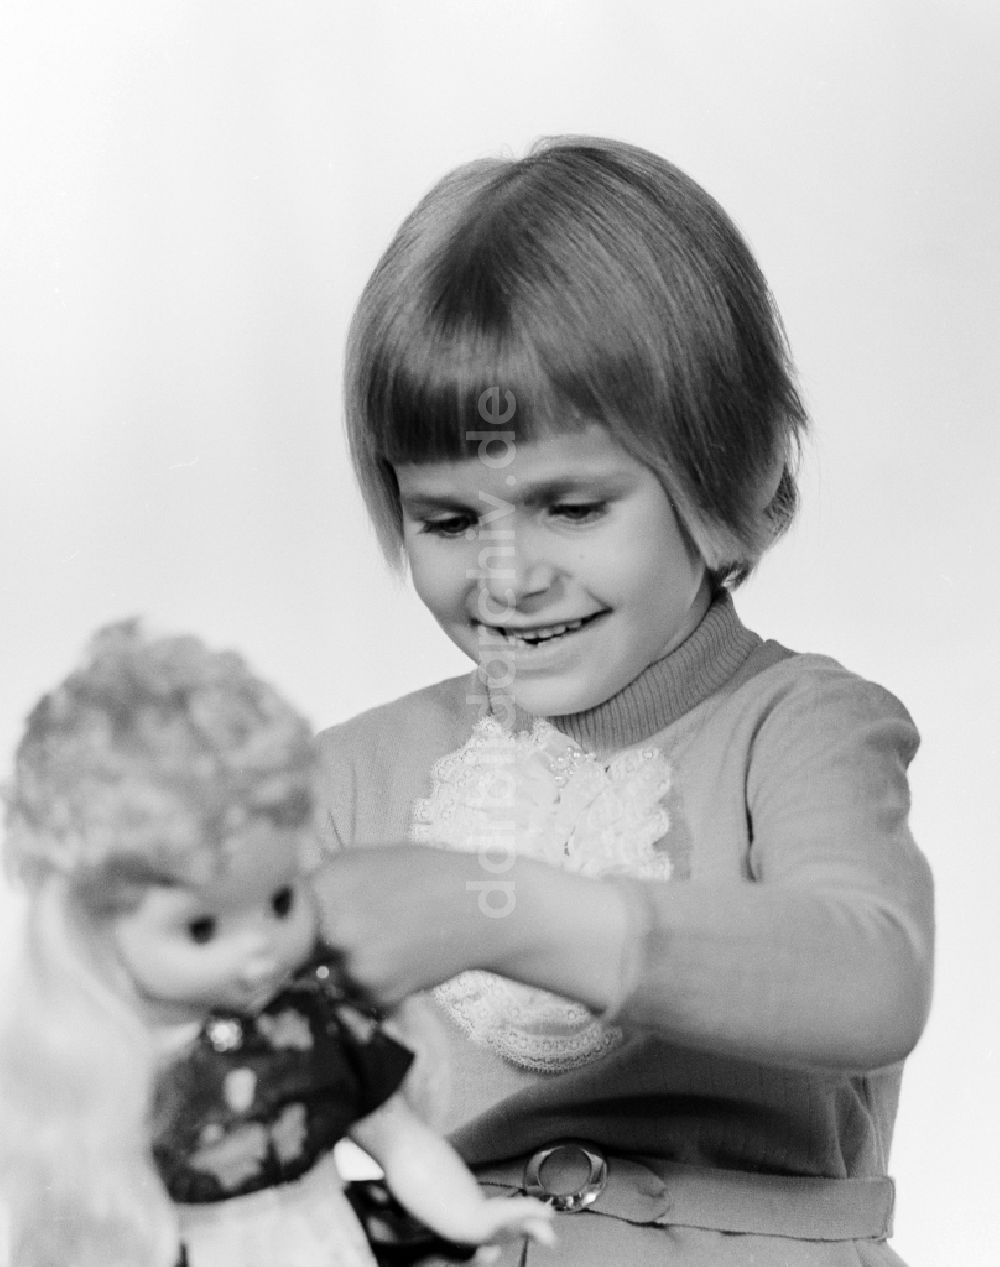 Berlin: Ein kleines Kind spielt mit einer Puppe in Berlin, der ehemaligen Hauptstadt der DDR, Deutsche Demokratische Republik